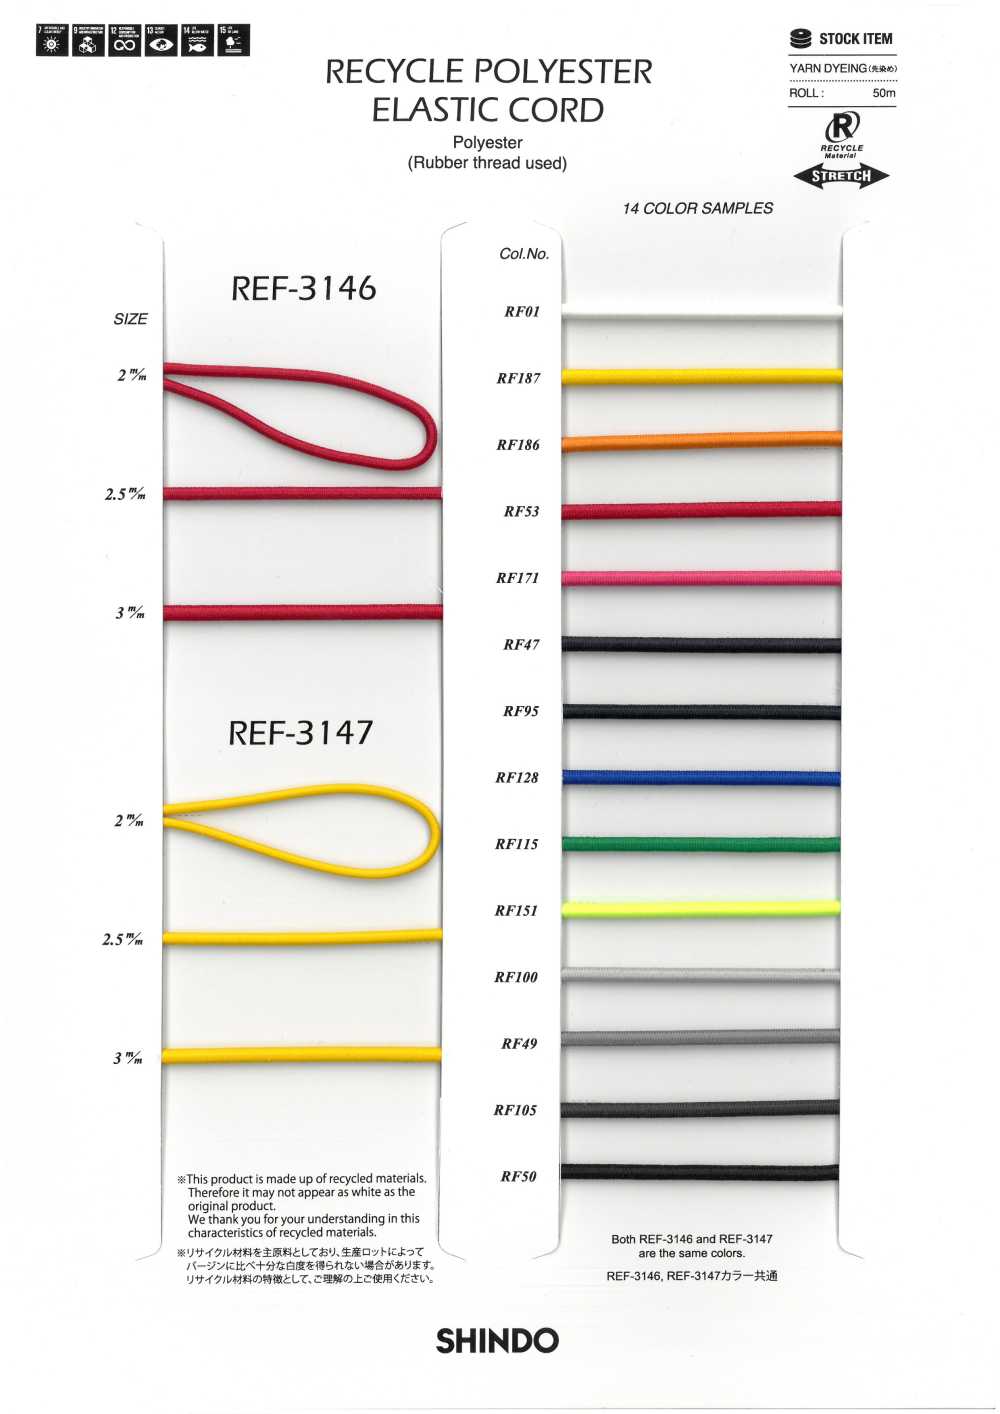 REF-3146 Cordon élastique En Polyester Recyclé (Type Souple)[Ruban Ruban Cordon] SHINDO(SIC)